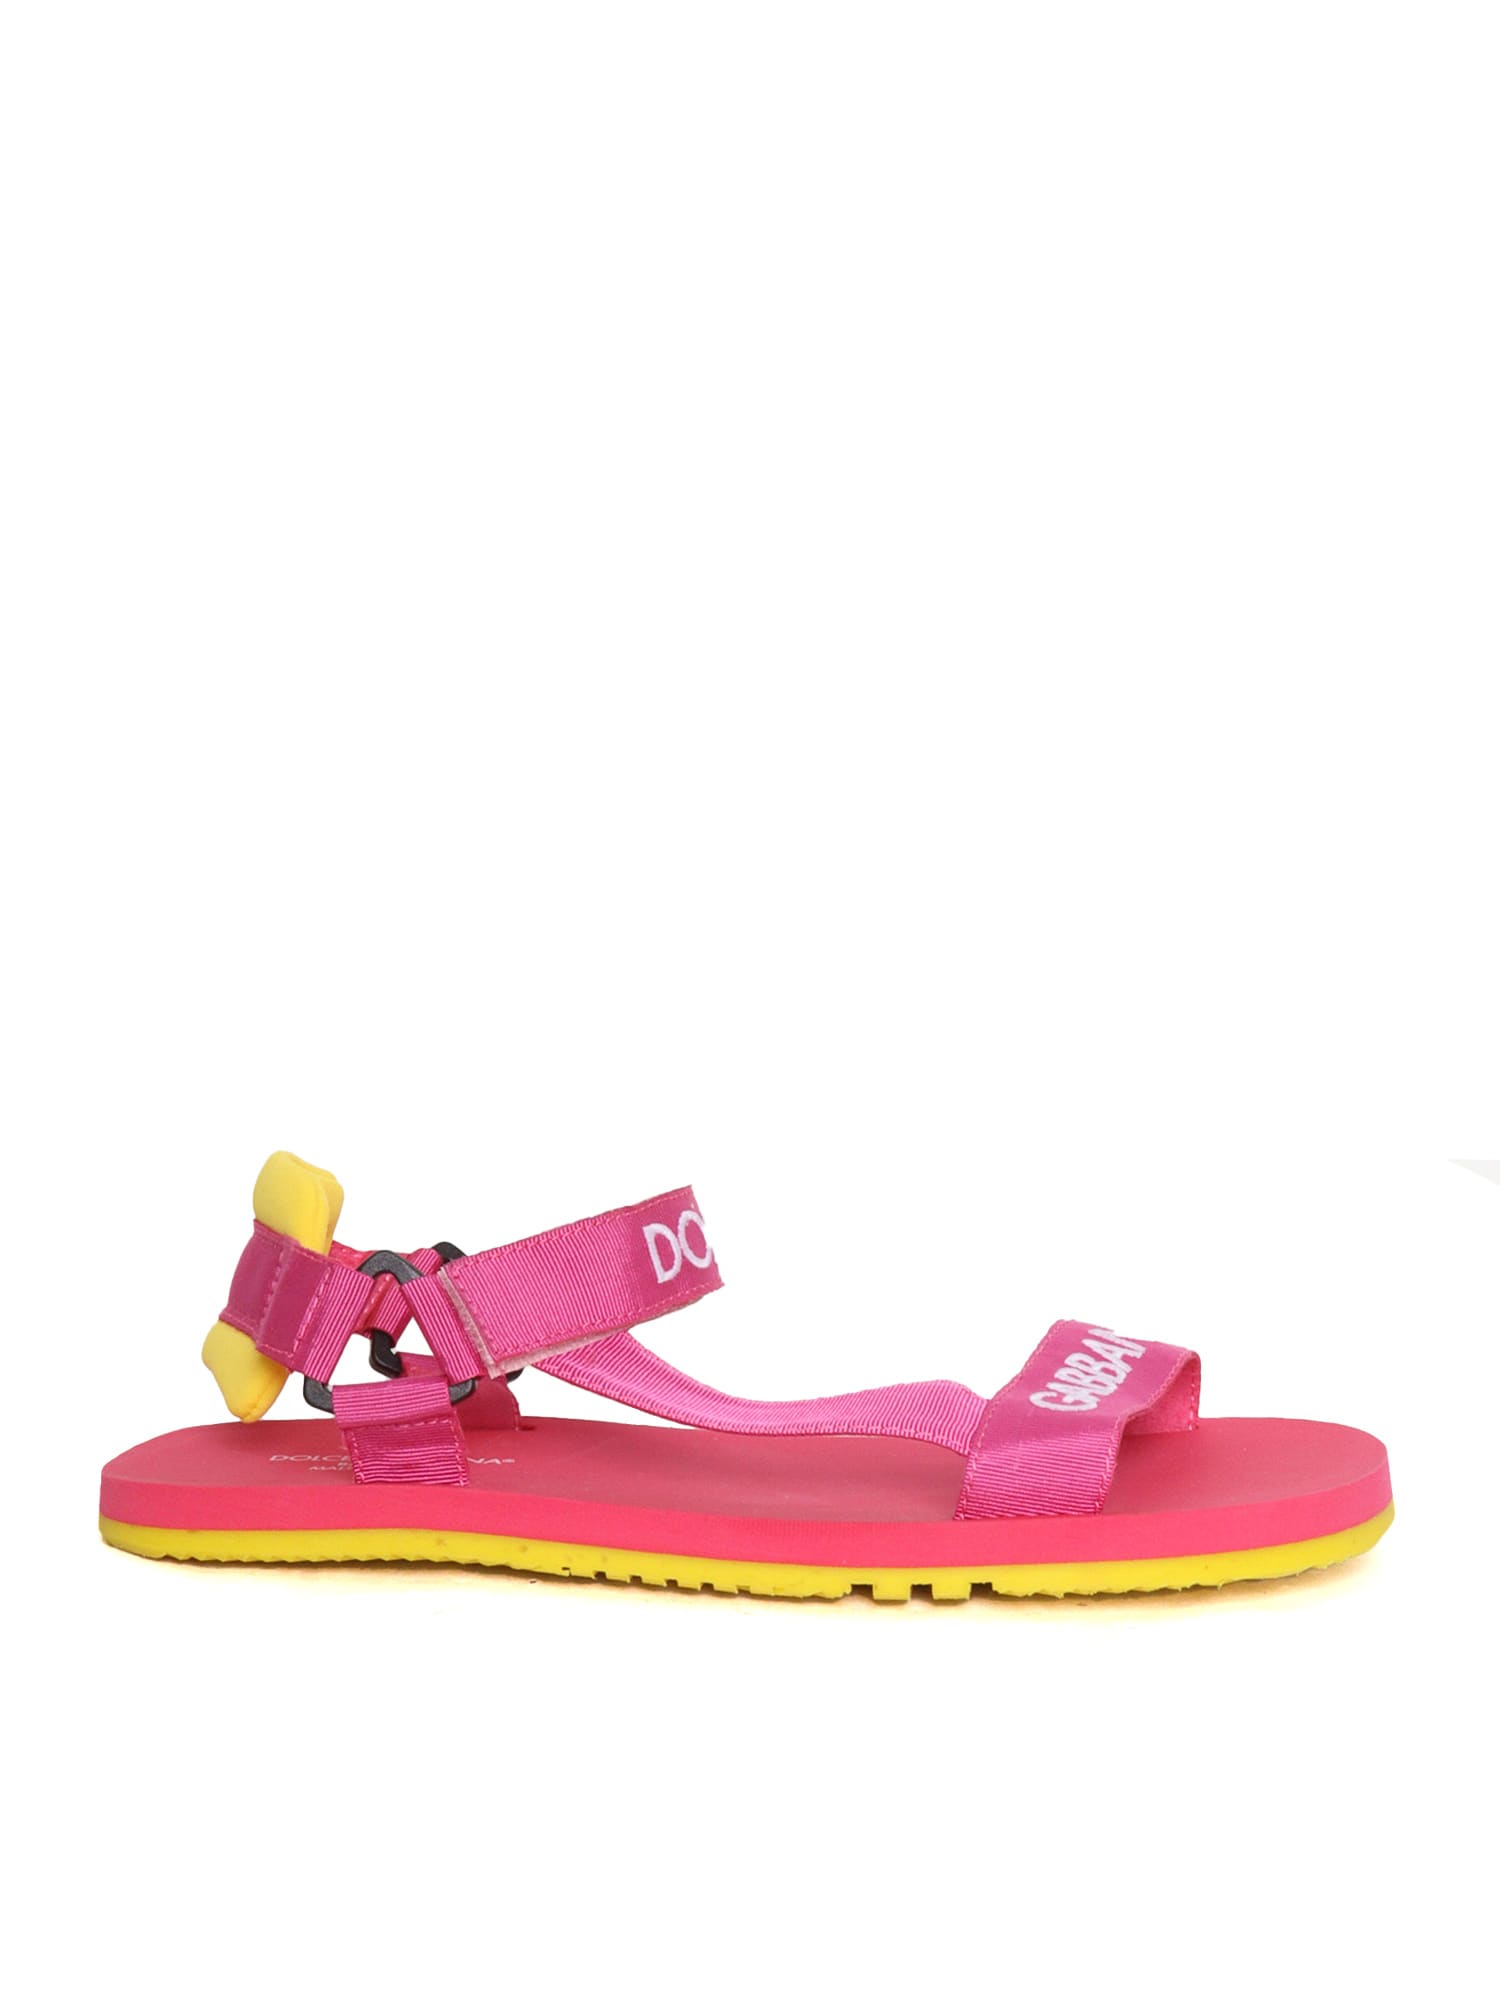 Dolce & Gabbana D & g Junior Pink Sandals